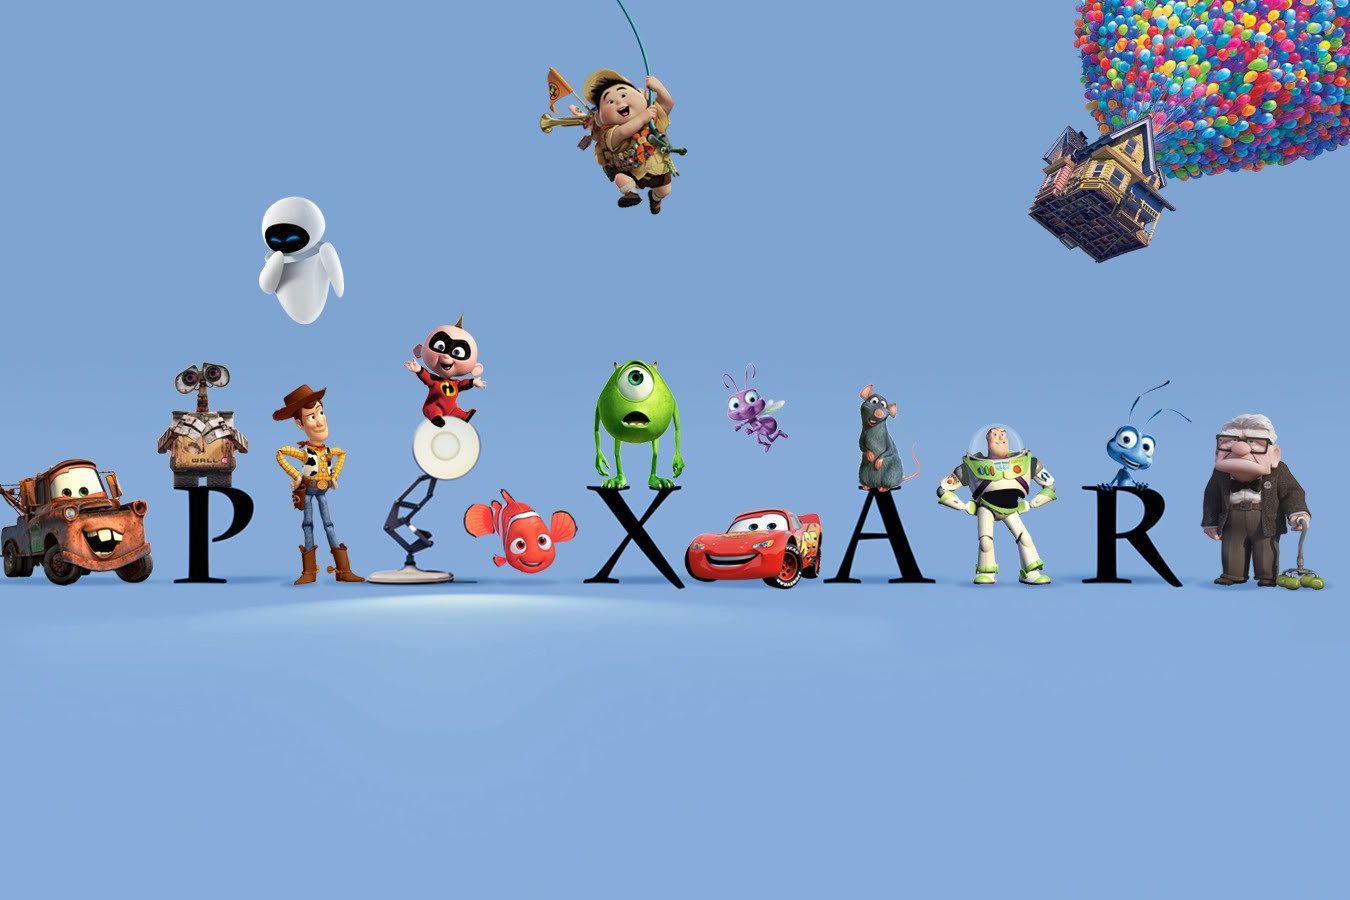 Фанат Mortal Kombat 1 создал мод, который позволяет добавить в игру героев мультфильмов студии Pixar